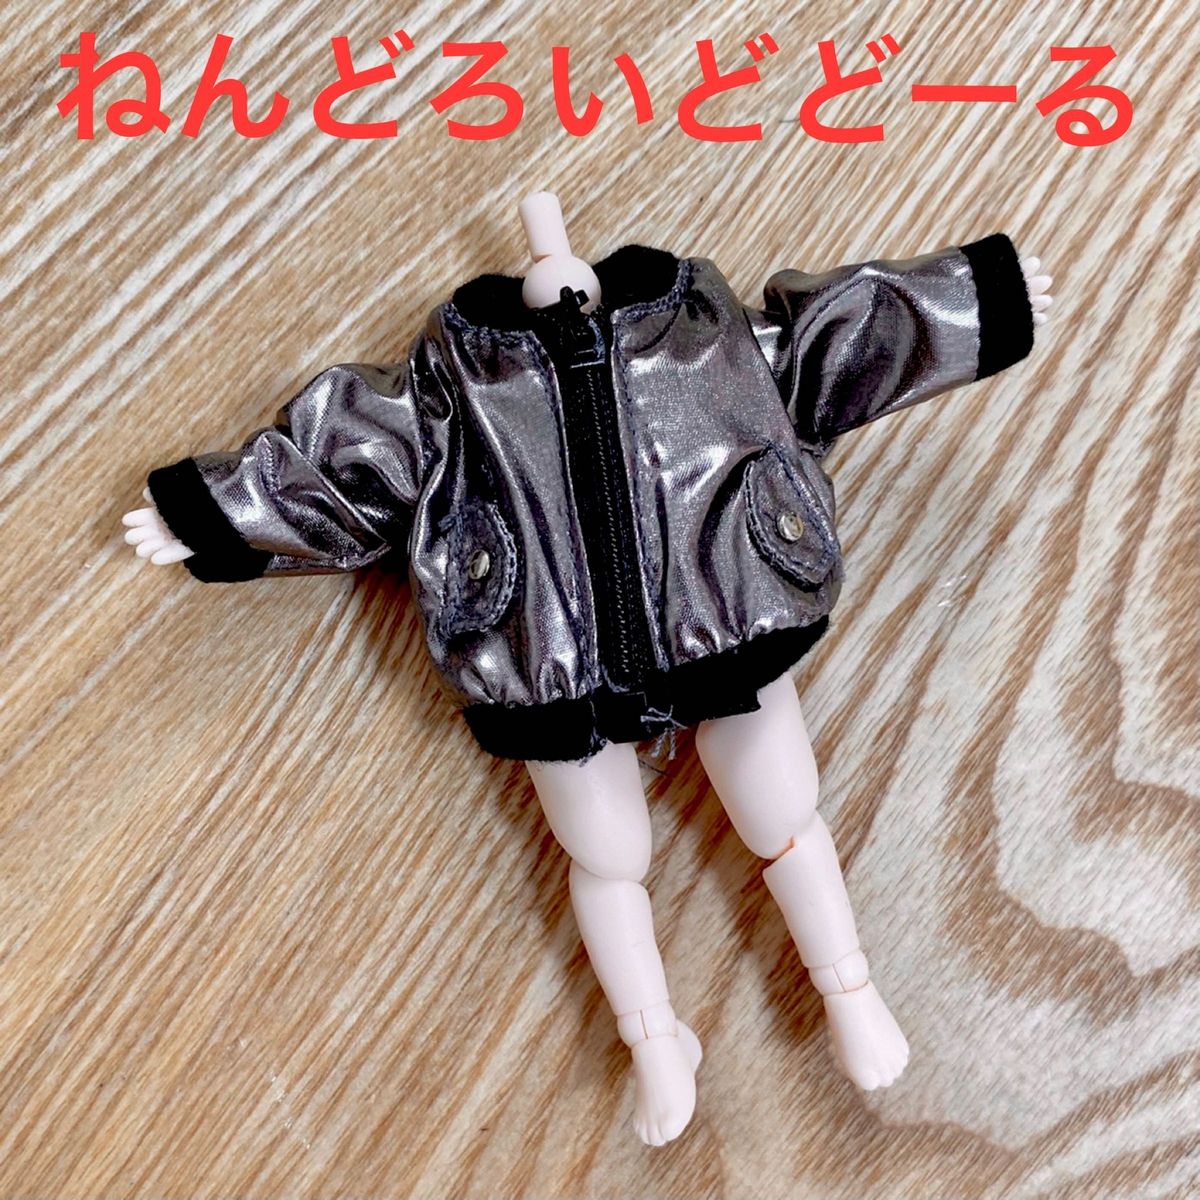 オビツ11 ねんどろいど どーる ジャケット 銀 ブルゾン ピコニーモ P 人形 服 セリア ドール コート 1/12 シルバー